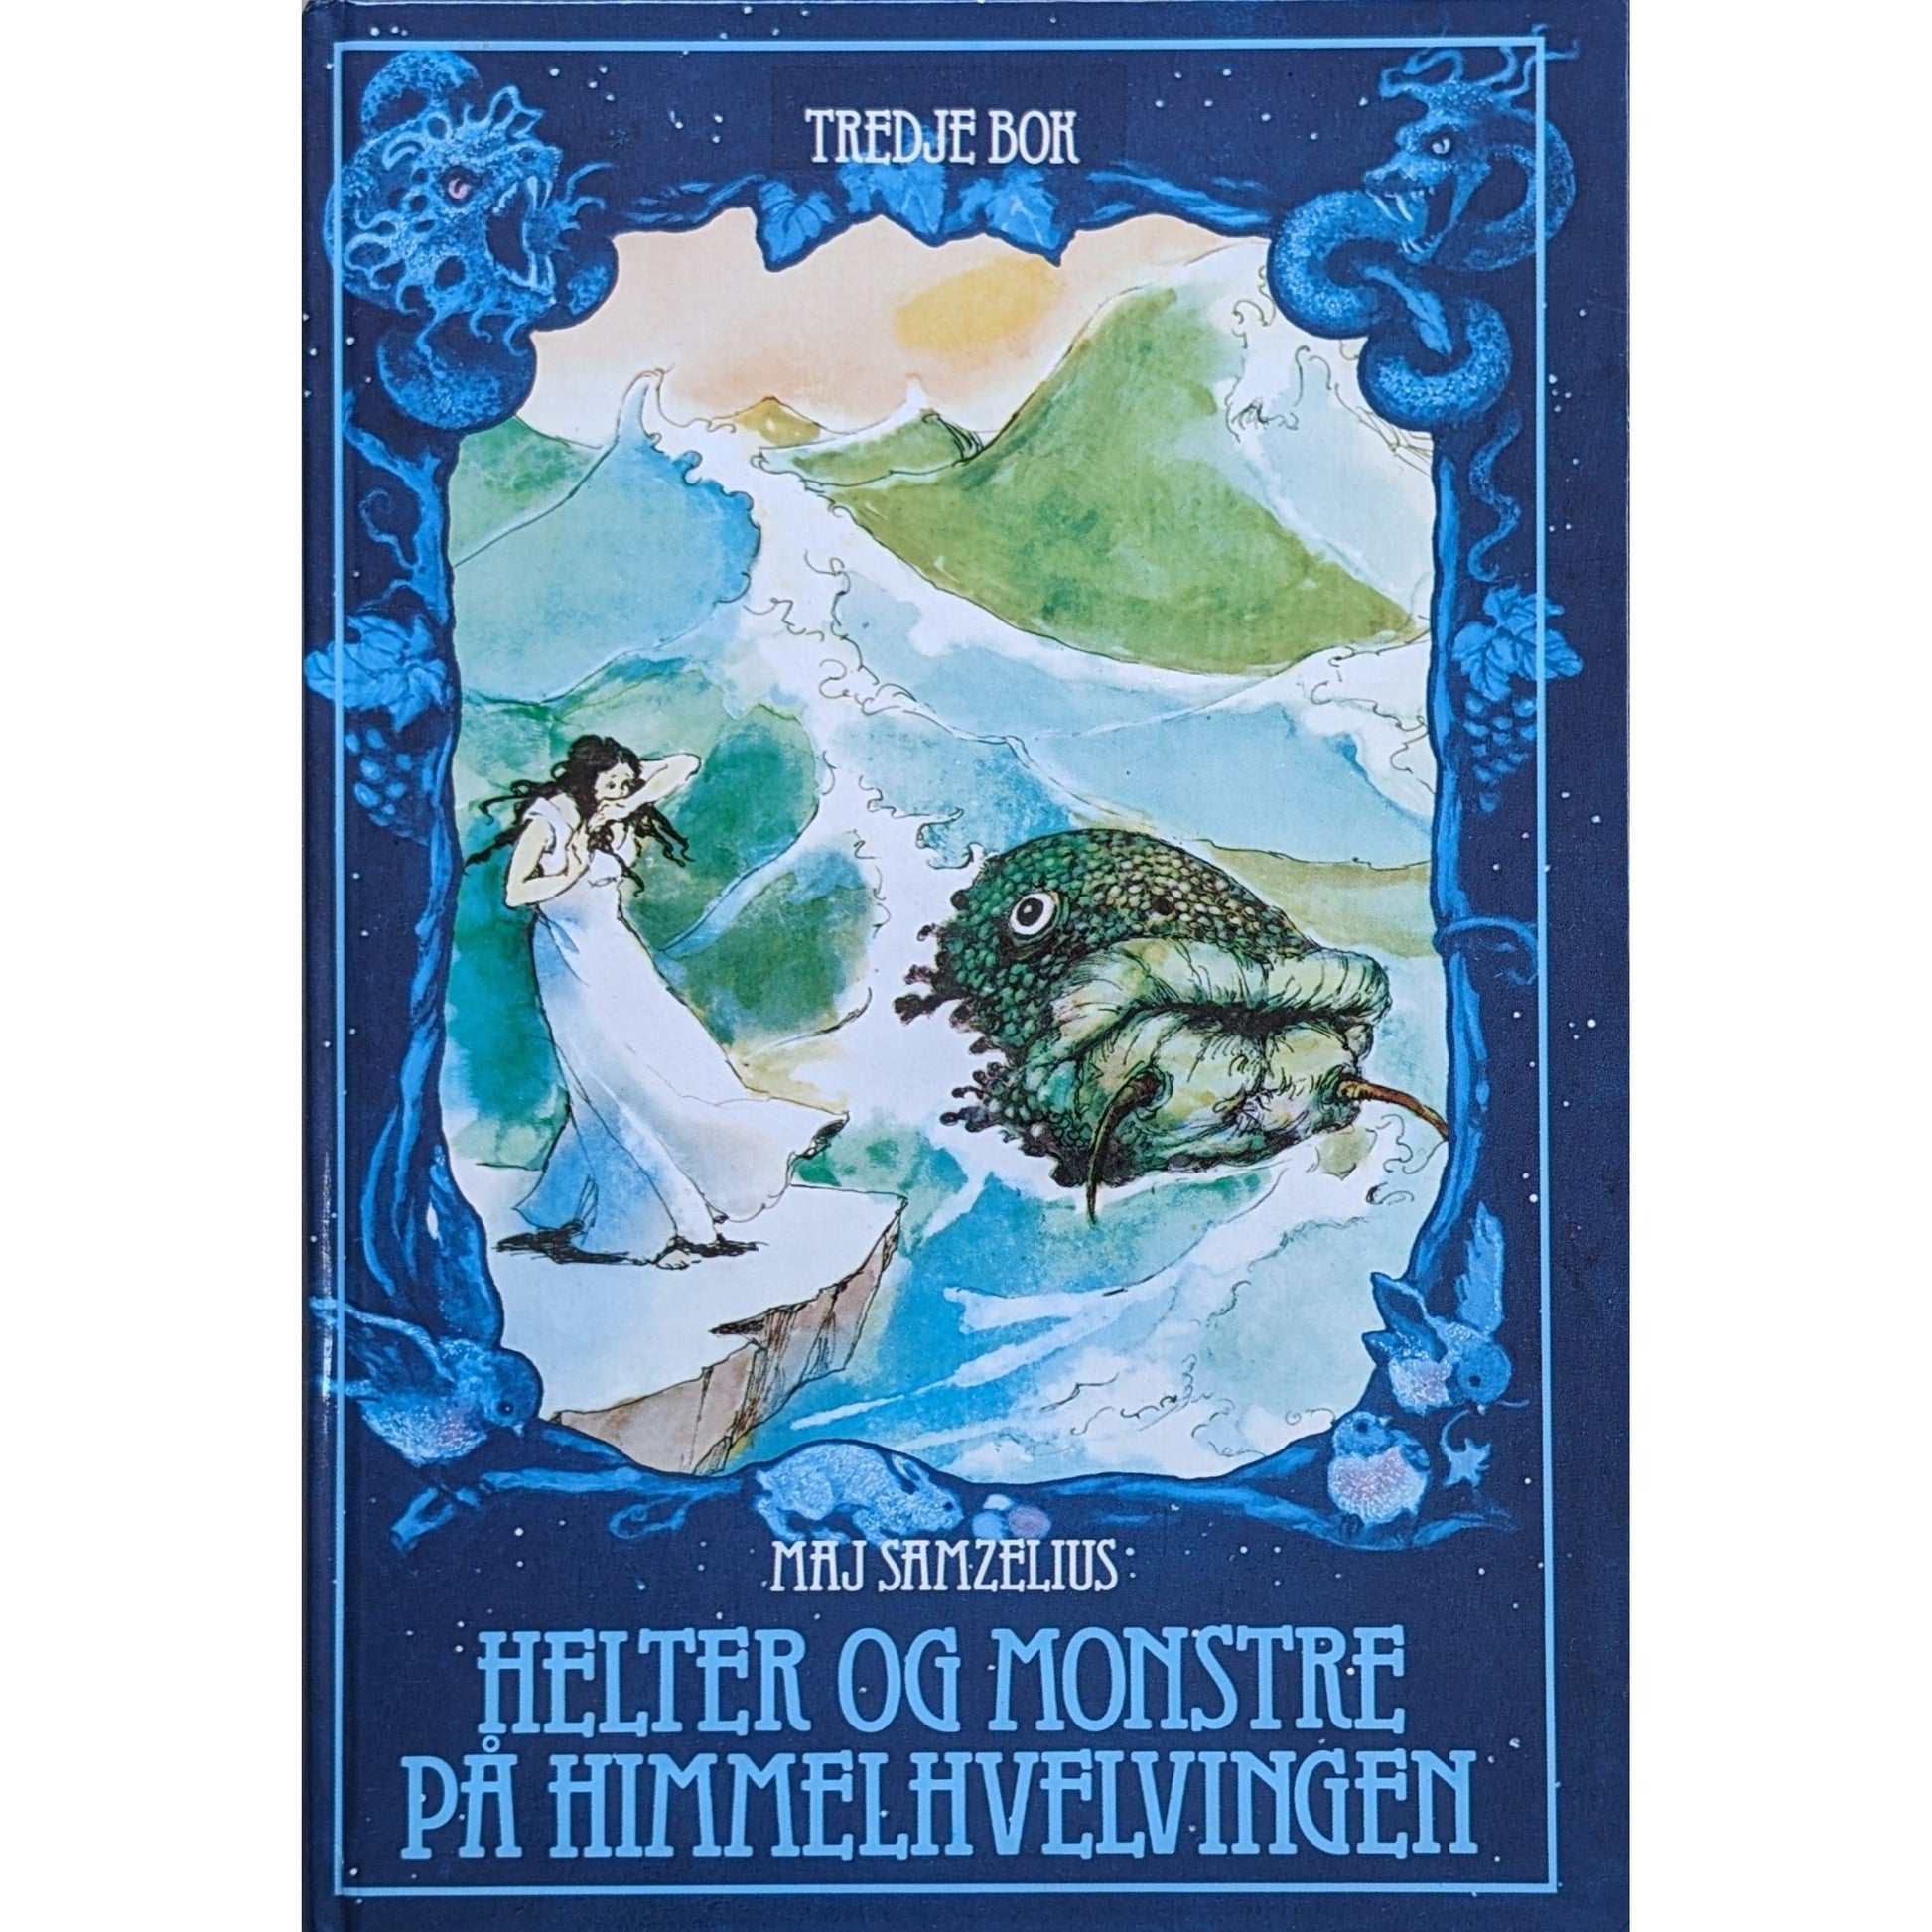 Helter og monstre på himmelhvelvingen - Tredje bok - Brukte bøker av Maj Samzelius og Elisabeth Nyman